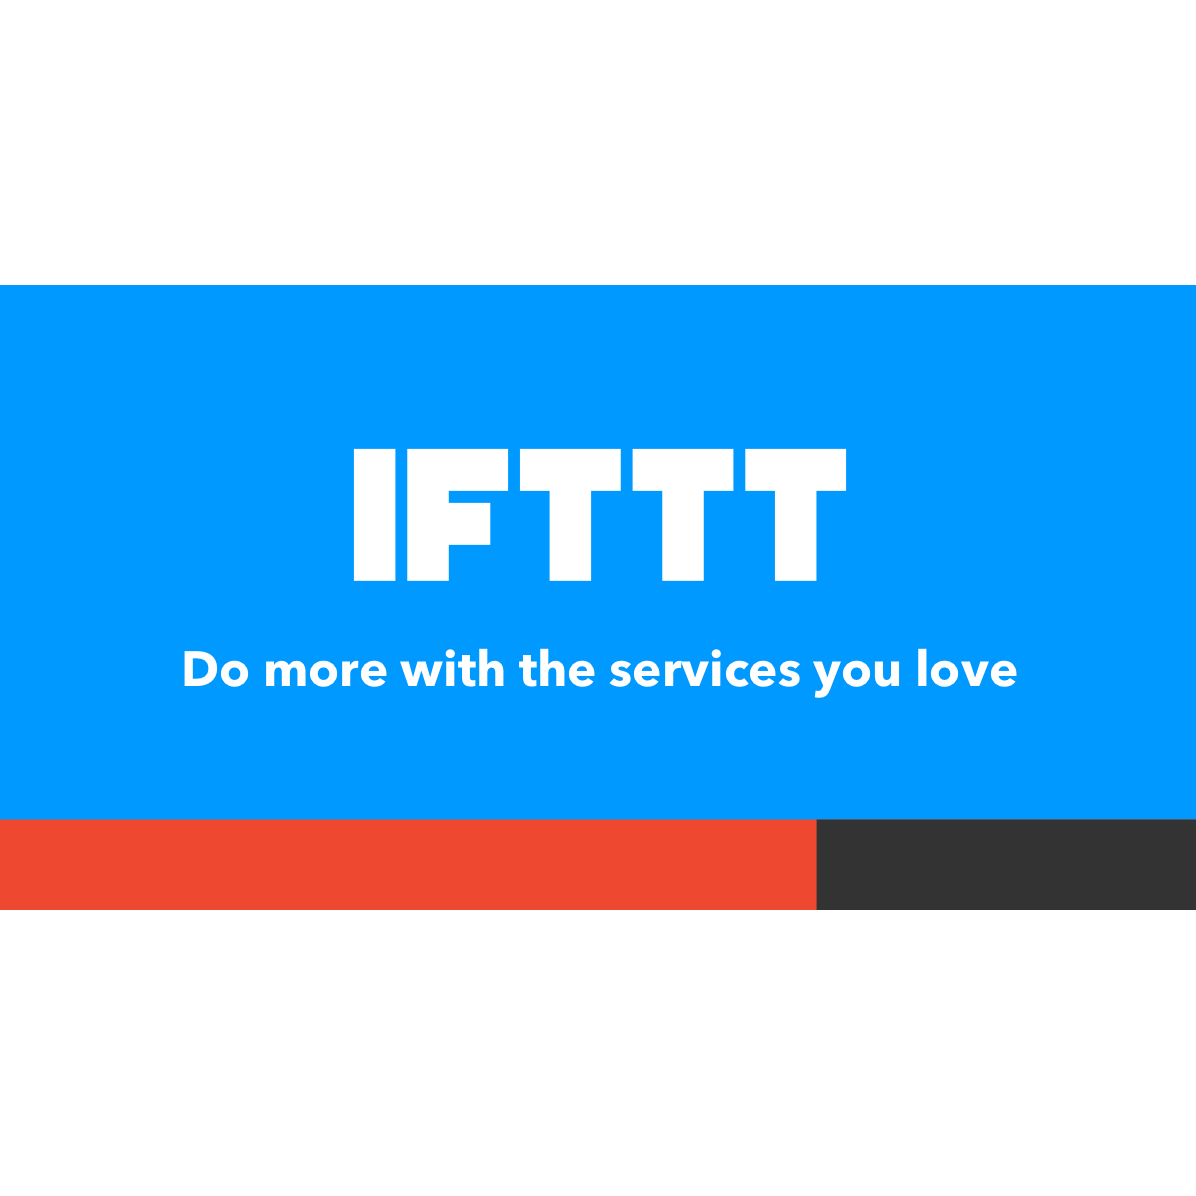 Ifttt.com logo